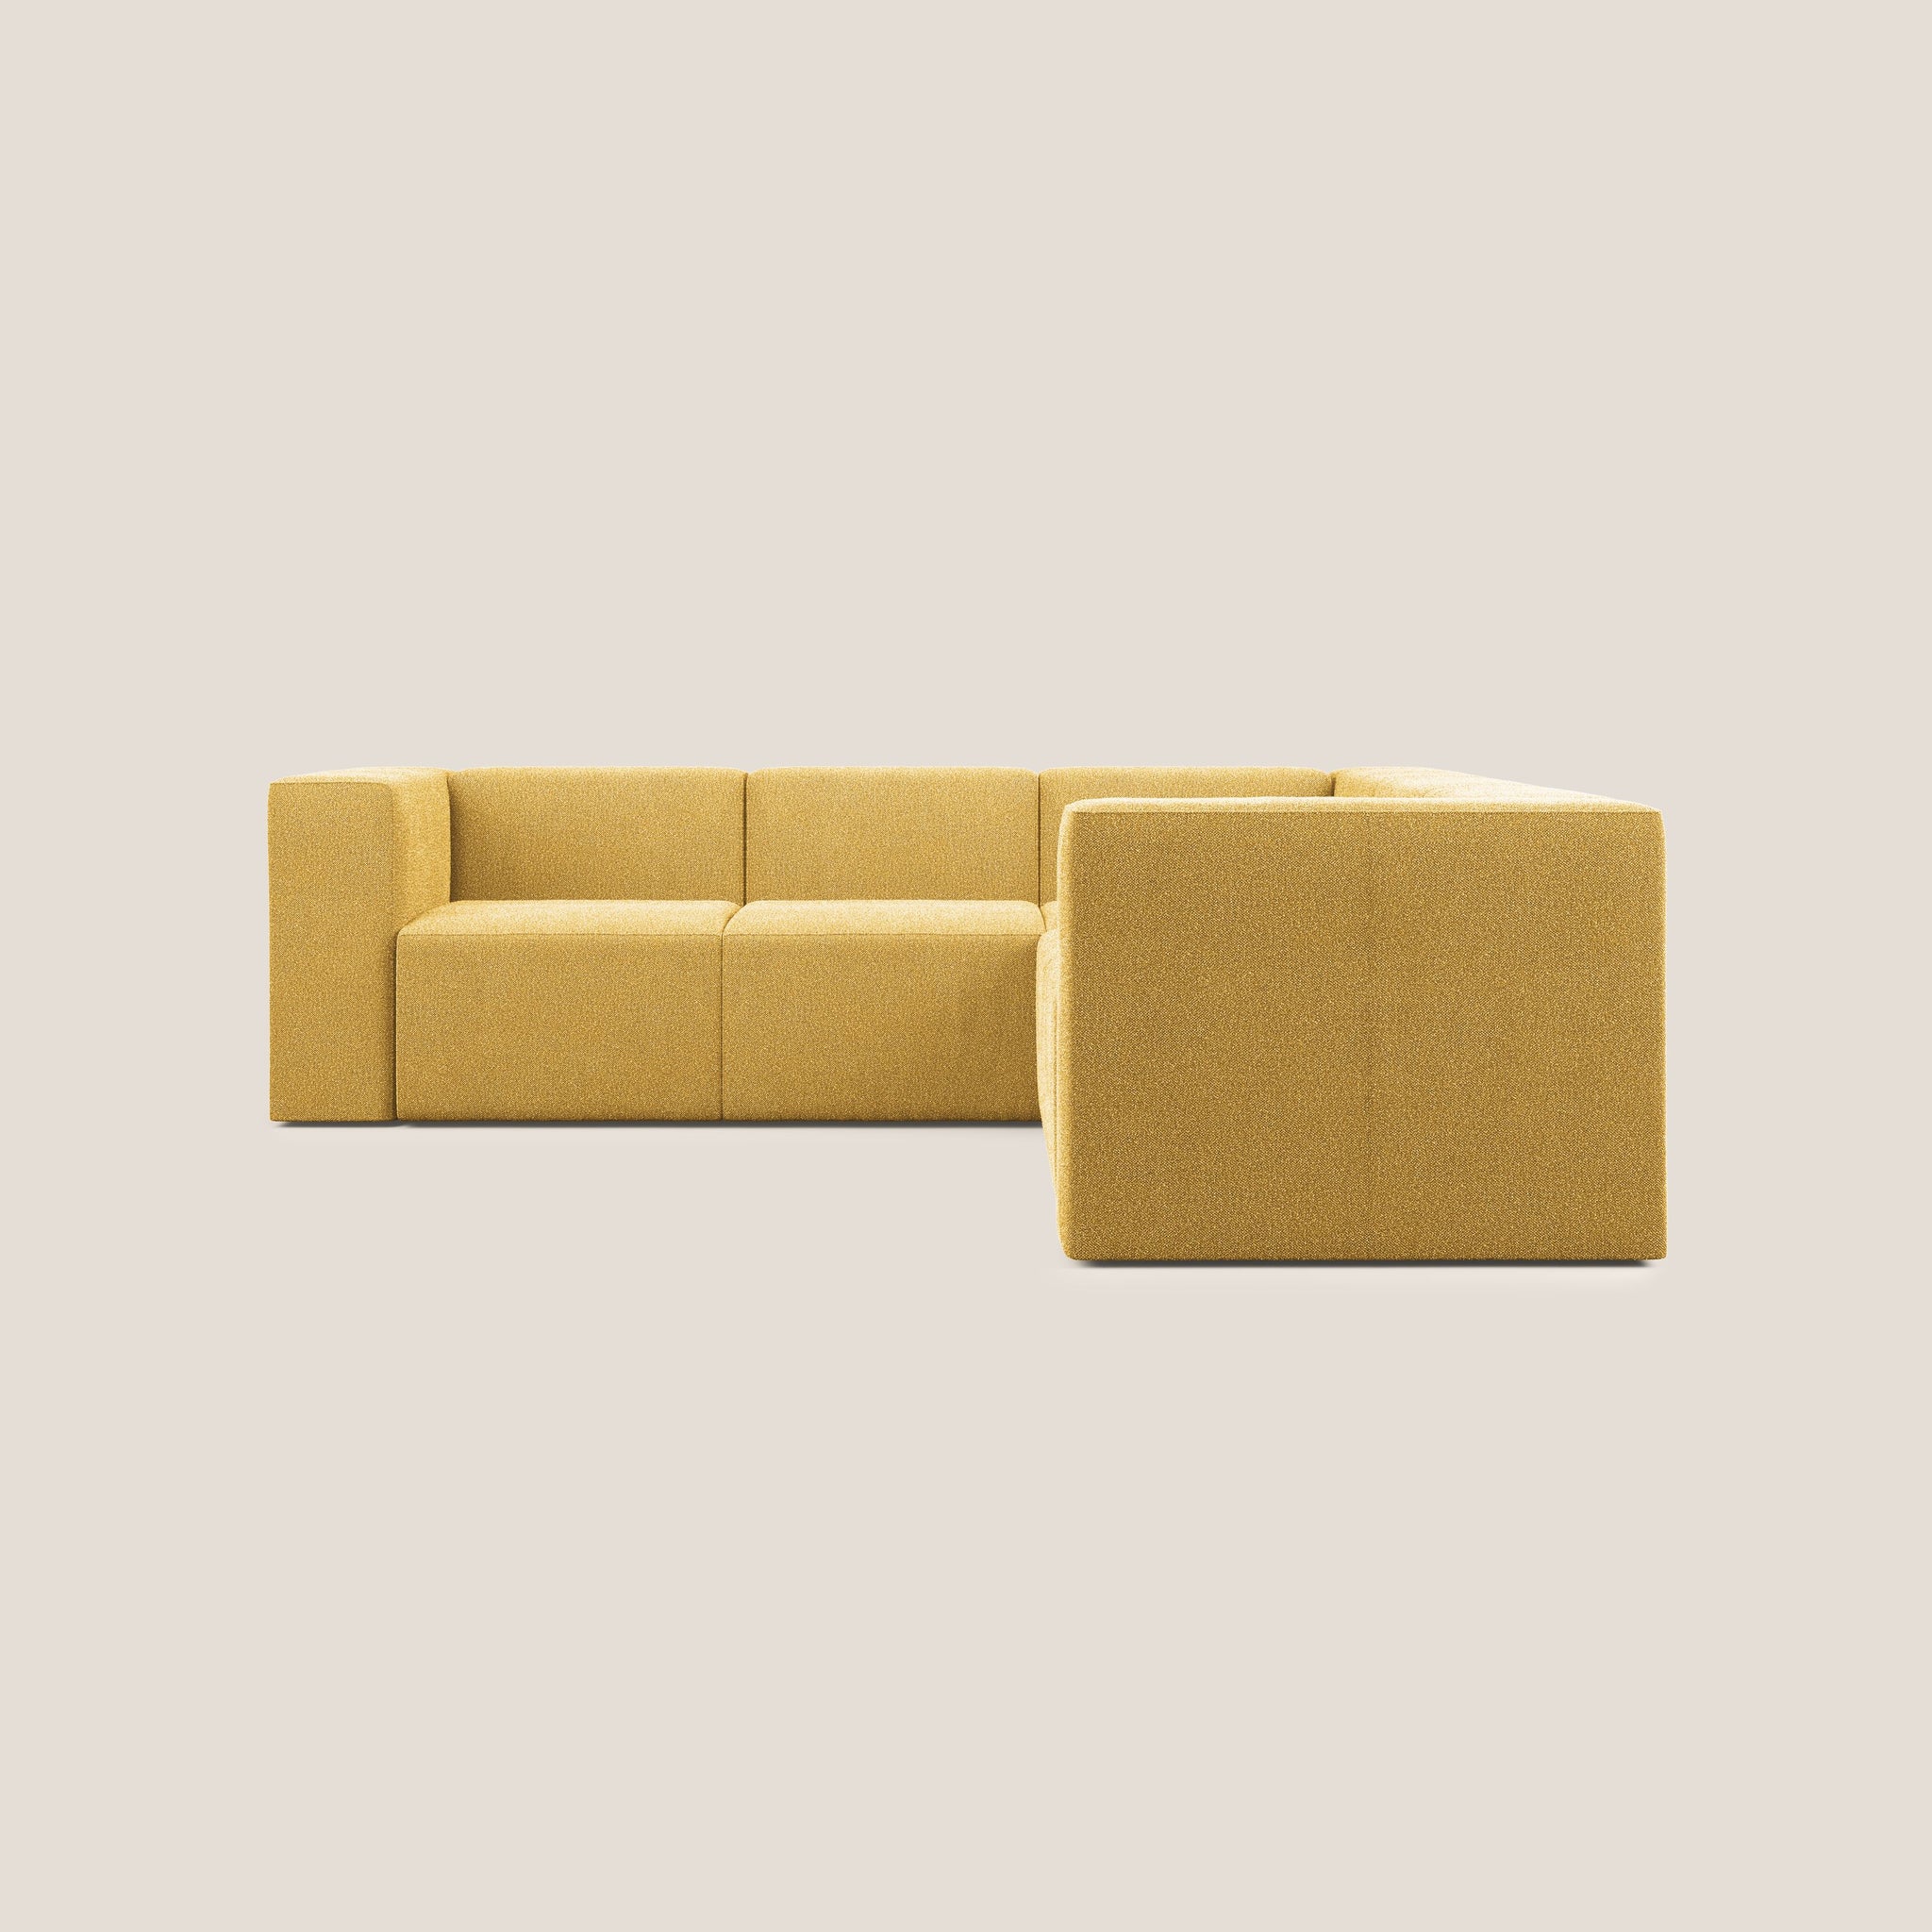 Nettuno divano angolare componibile reversibile in morbido tessuto bouclè T07